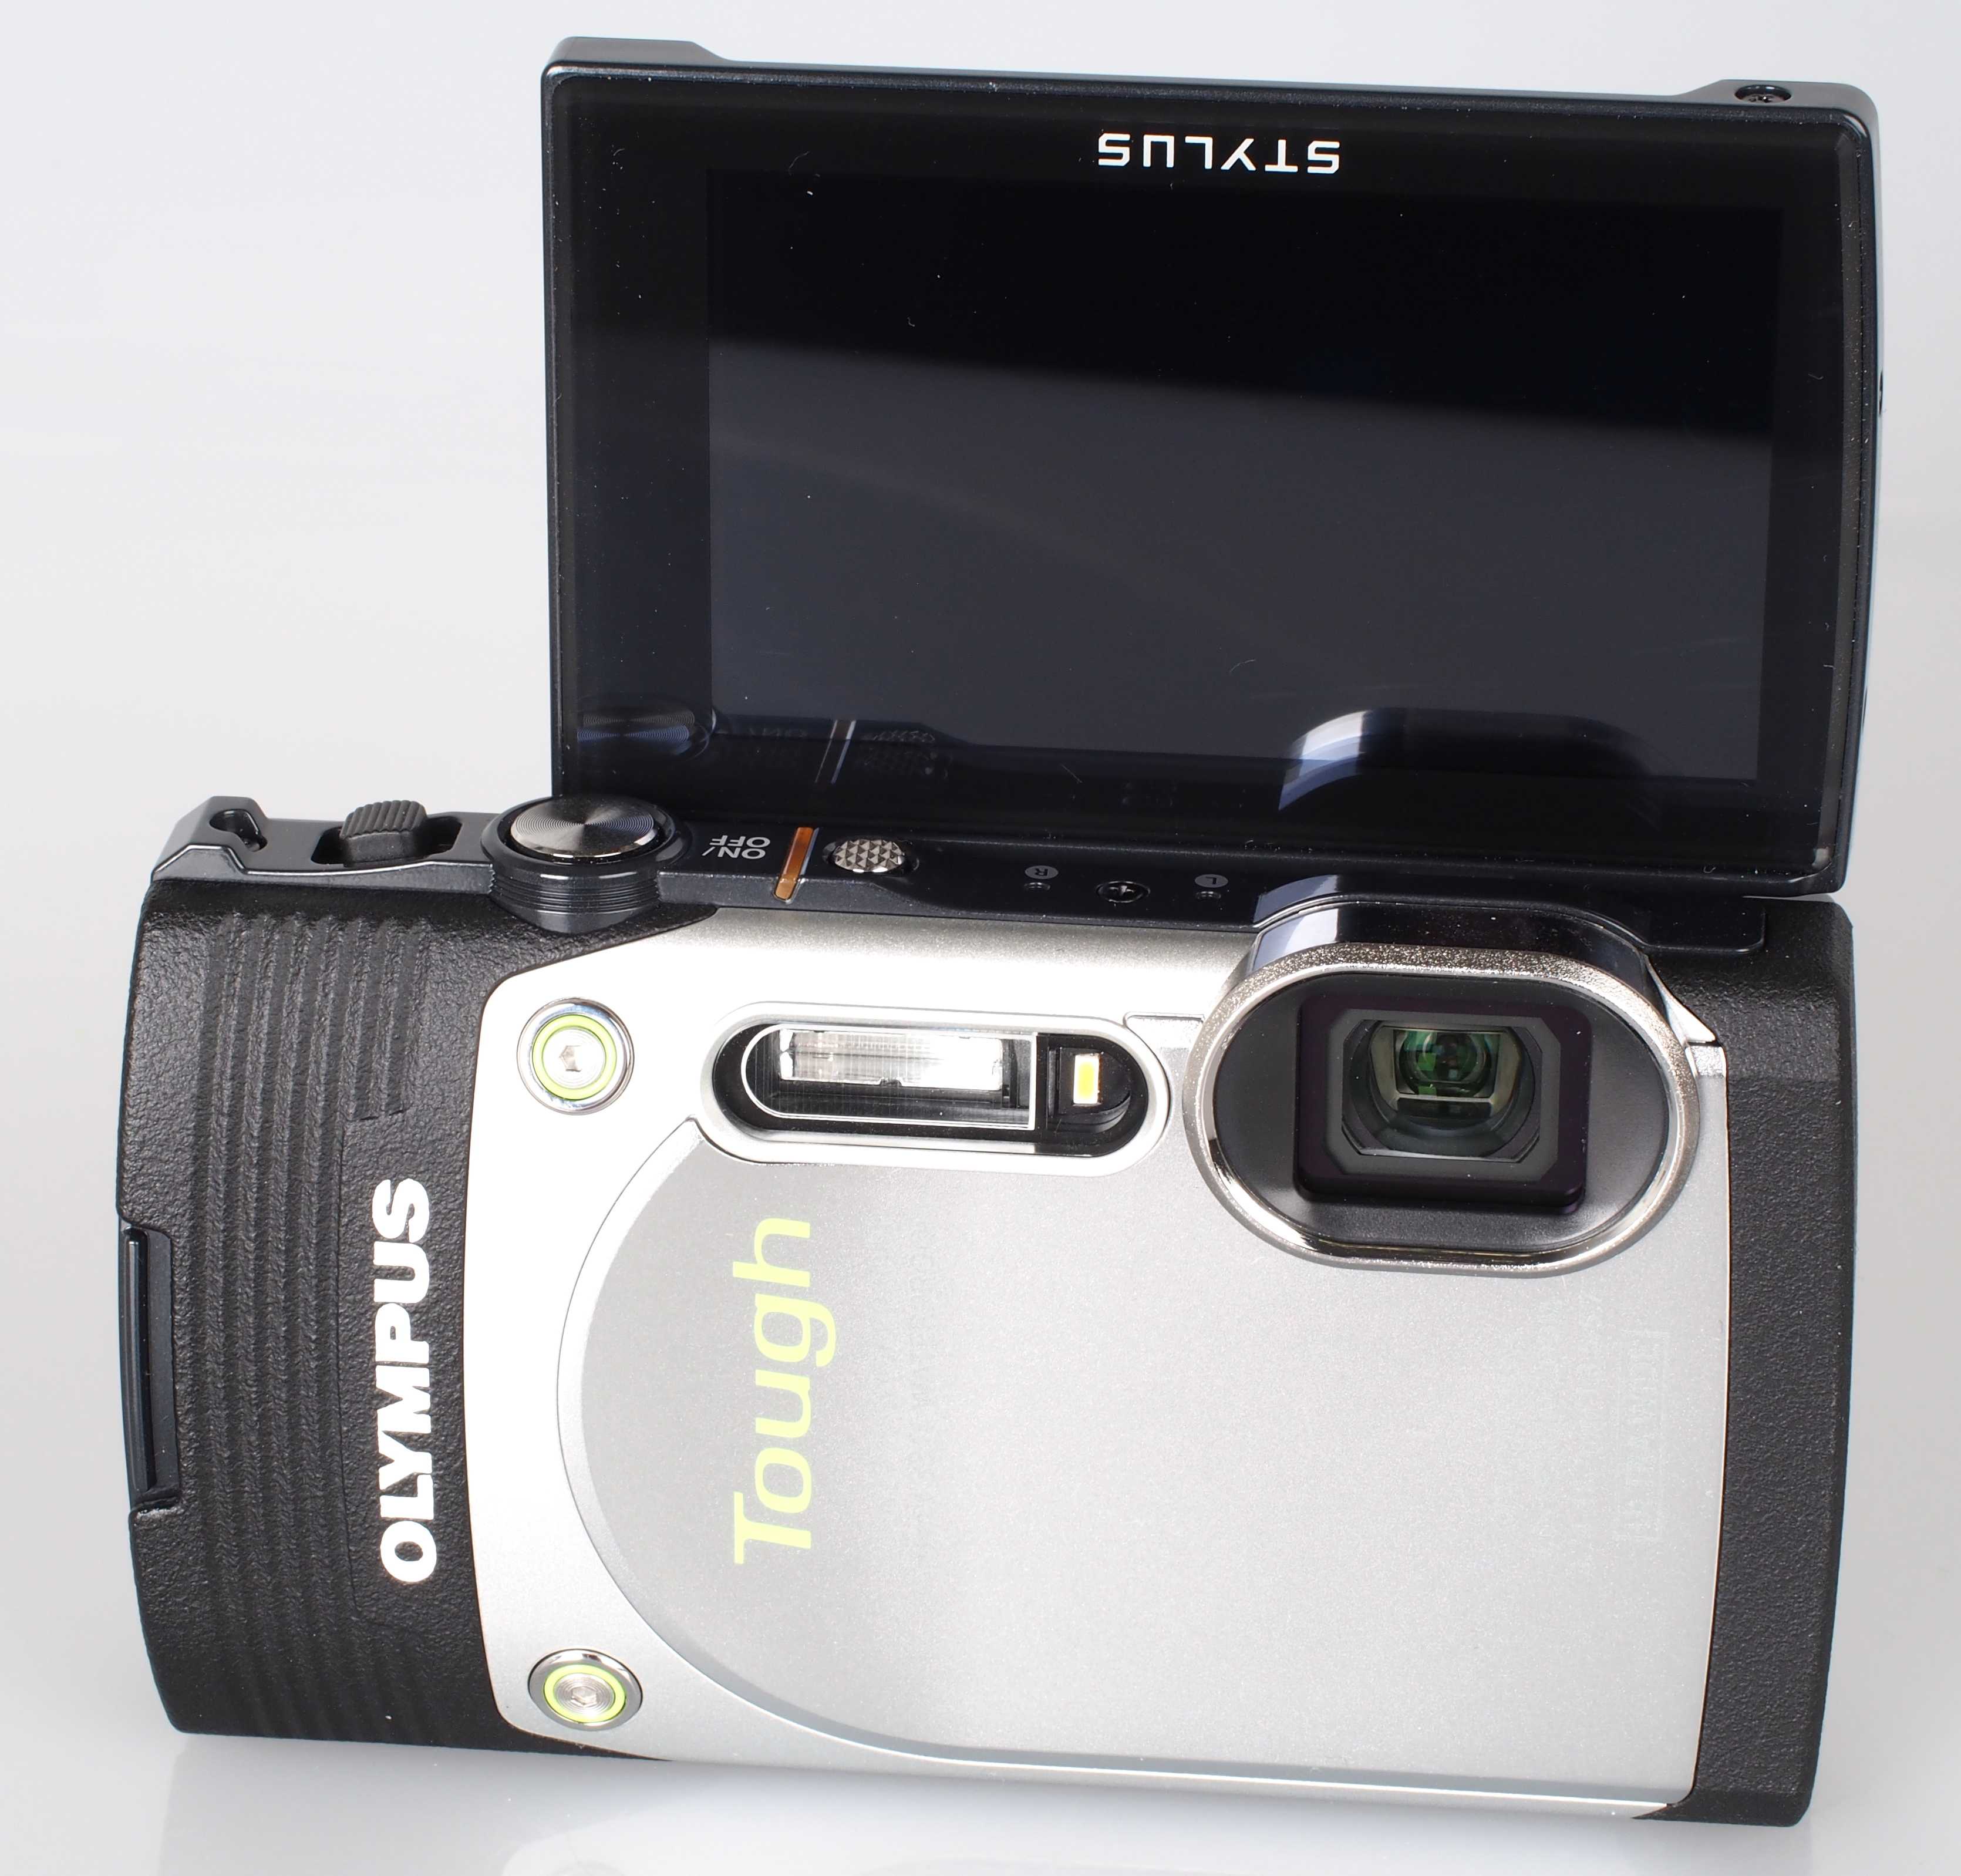 Цифровой фотоаппарат Olympus Stylus Tough TG-850 iHS - подробные характеристики обзоры видео фото Цены в интернет-магазинах где можно купить цифровую фотоаппарат Olympus Stylus Tough TG-850 iHS